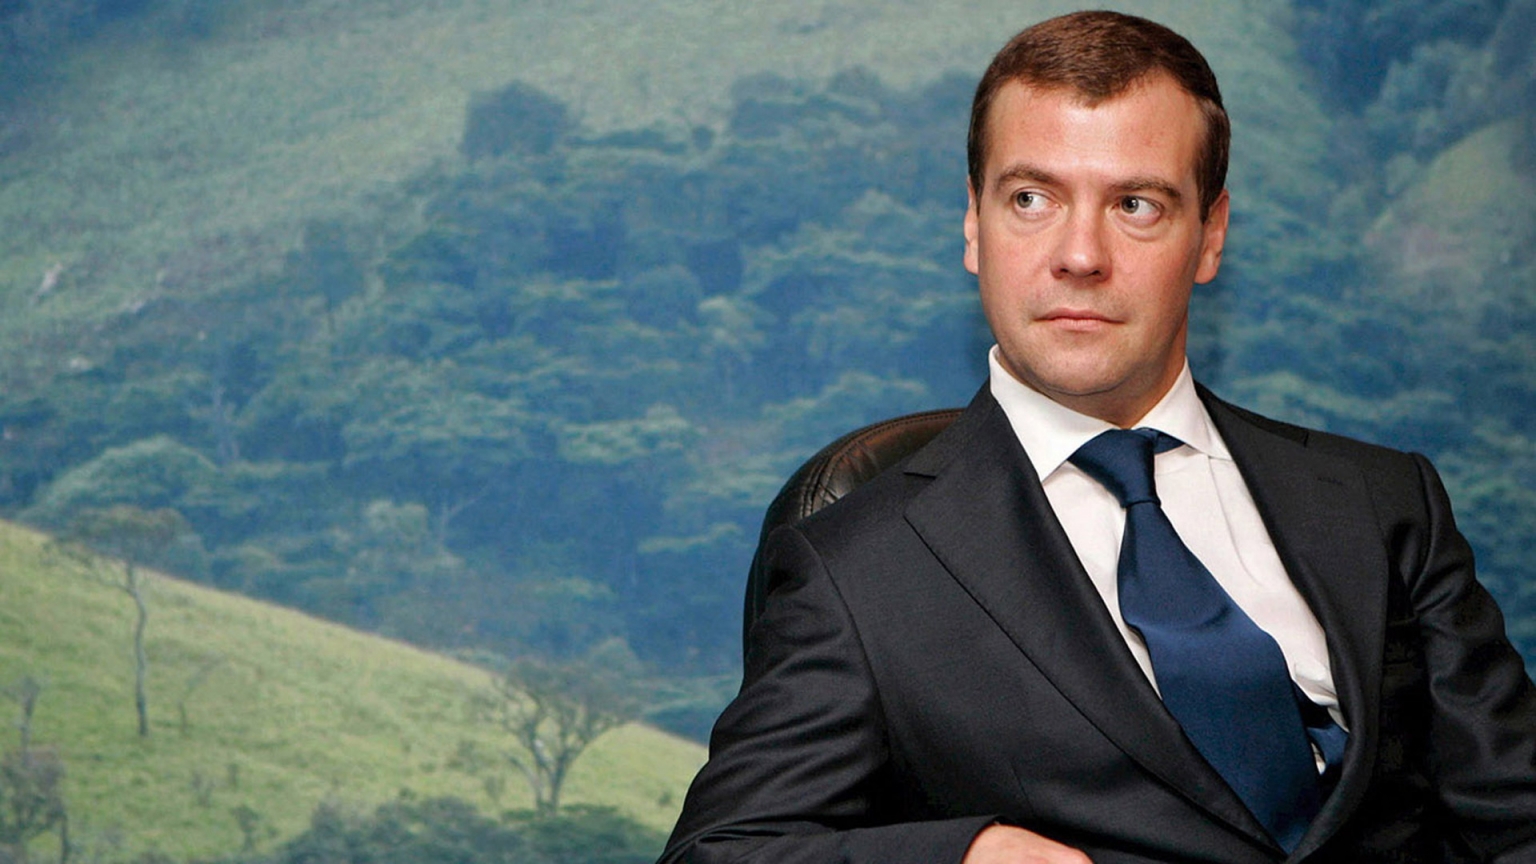 Dmitry Medvedev for 1536 x 864 HDTV resolution